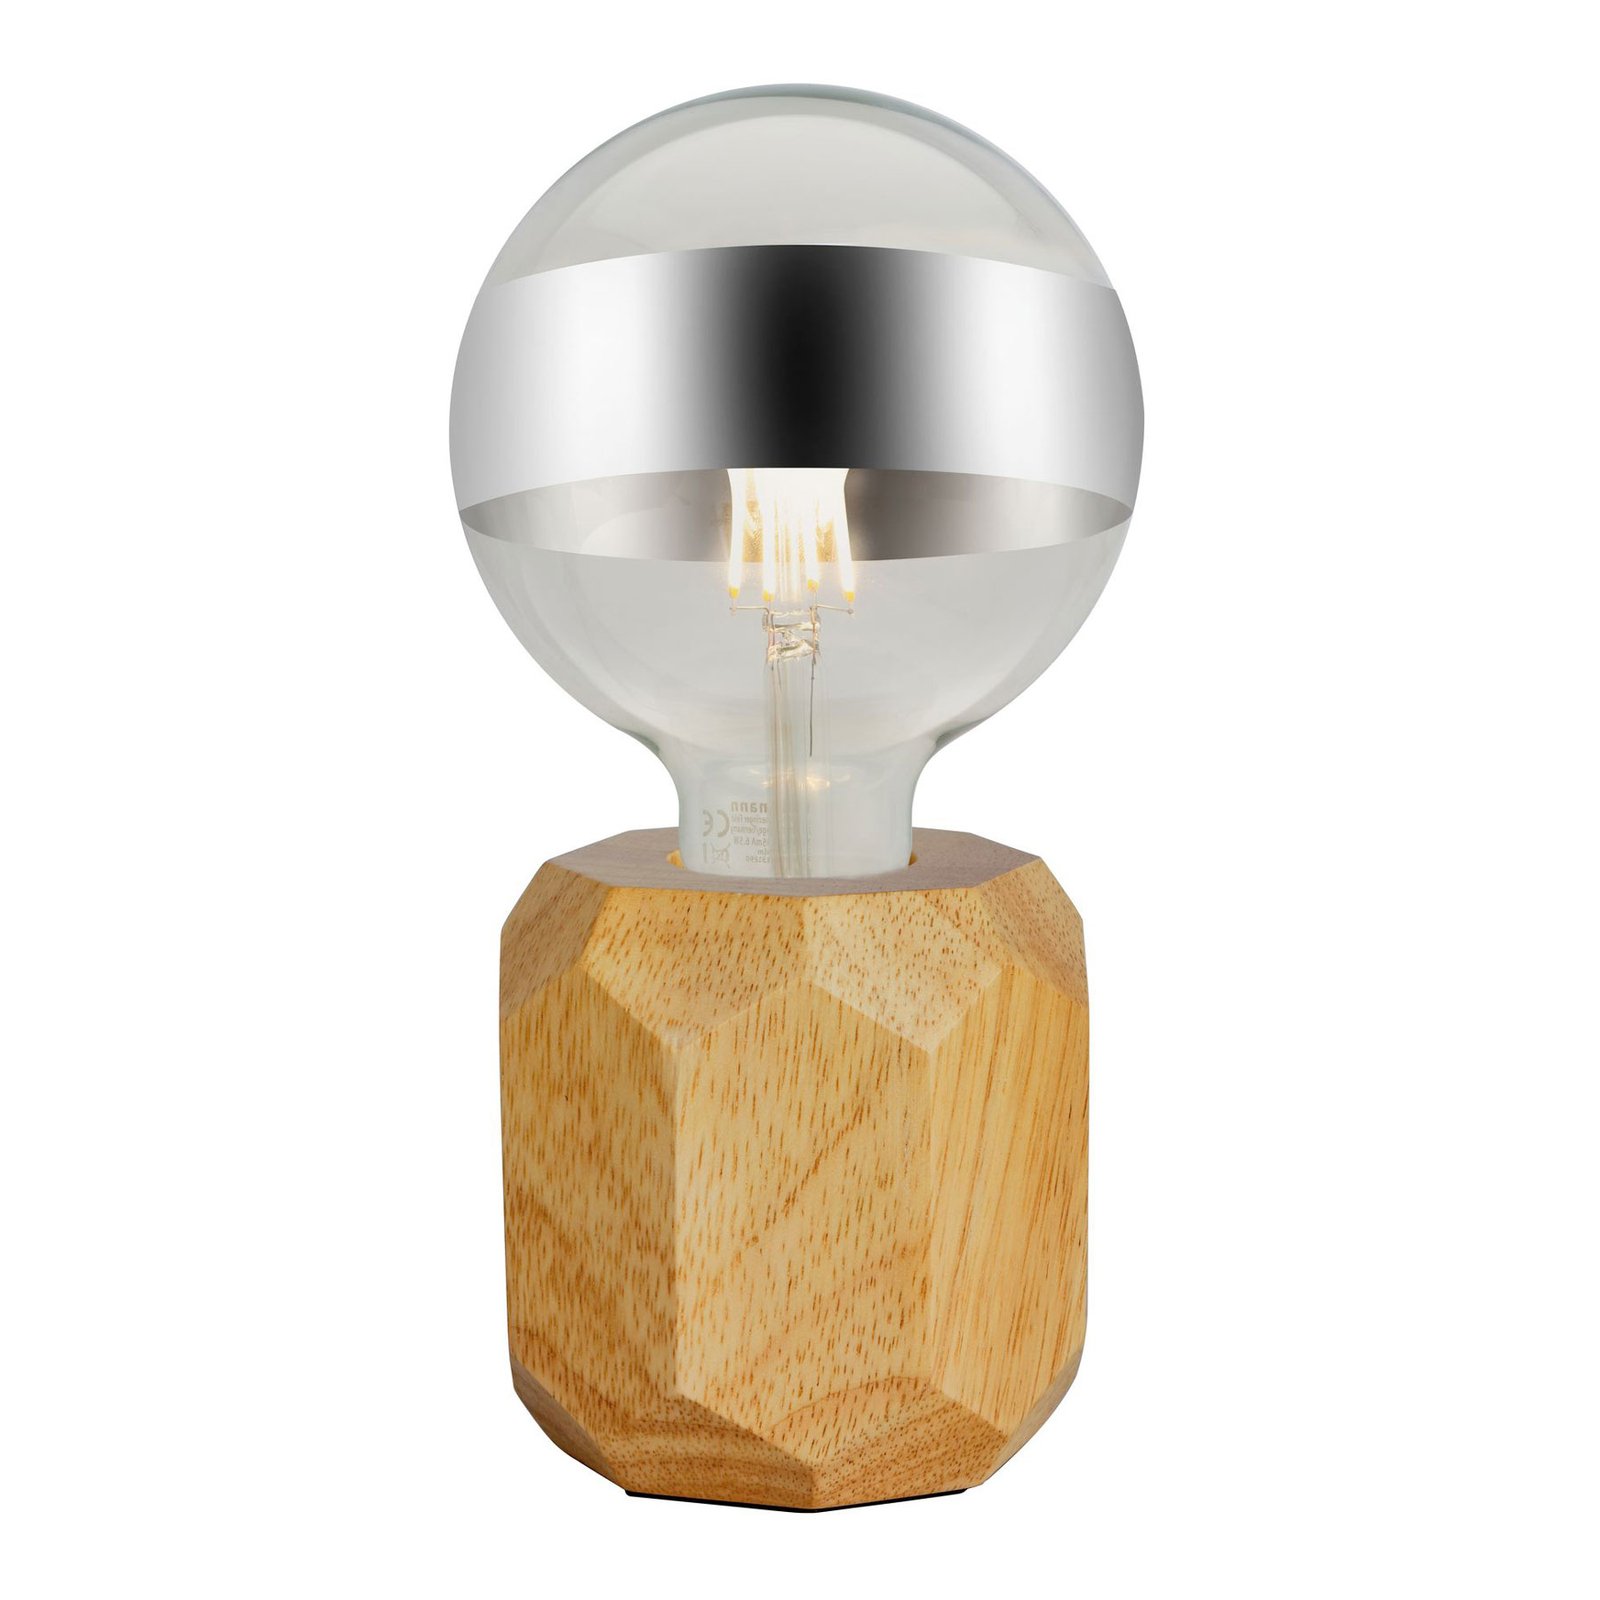 Pauleen Woody Sparkle lampe à poser en bois clair